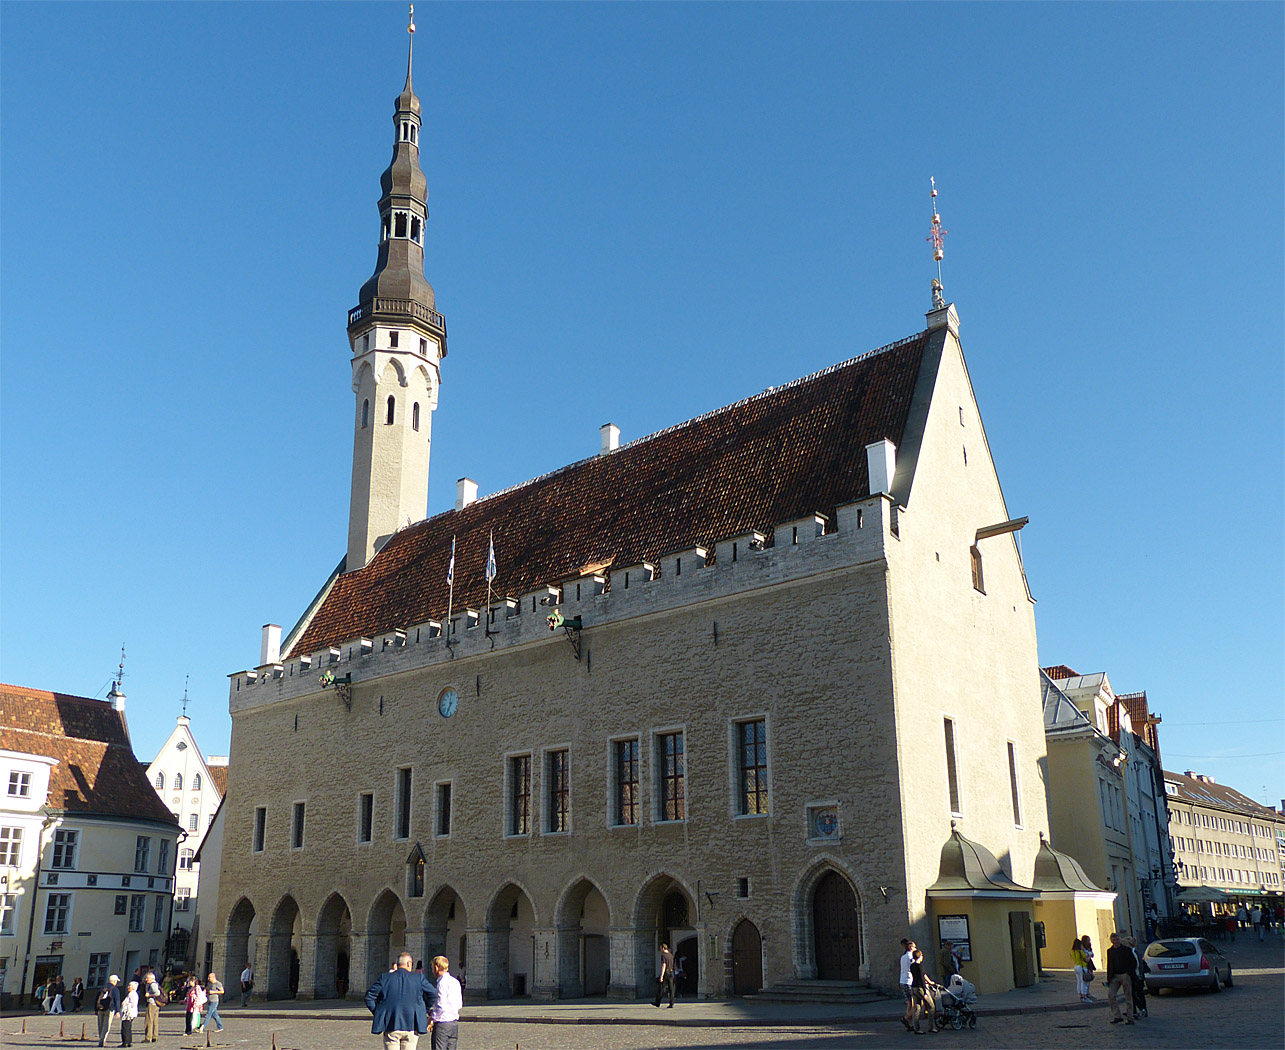 Old Town Hall, Tallinn, Estonia